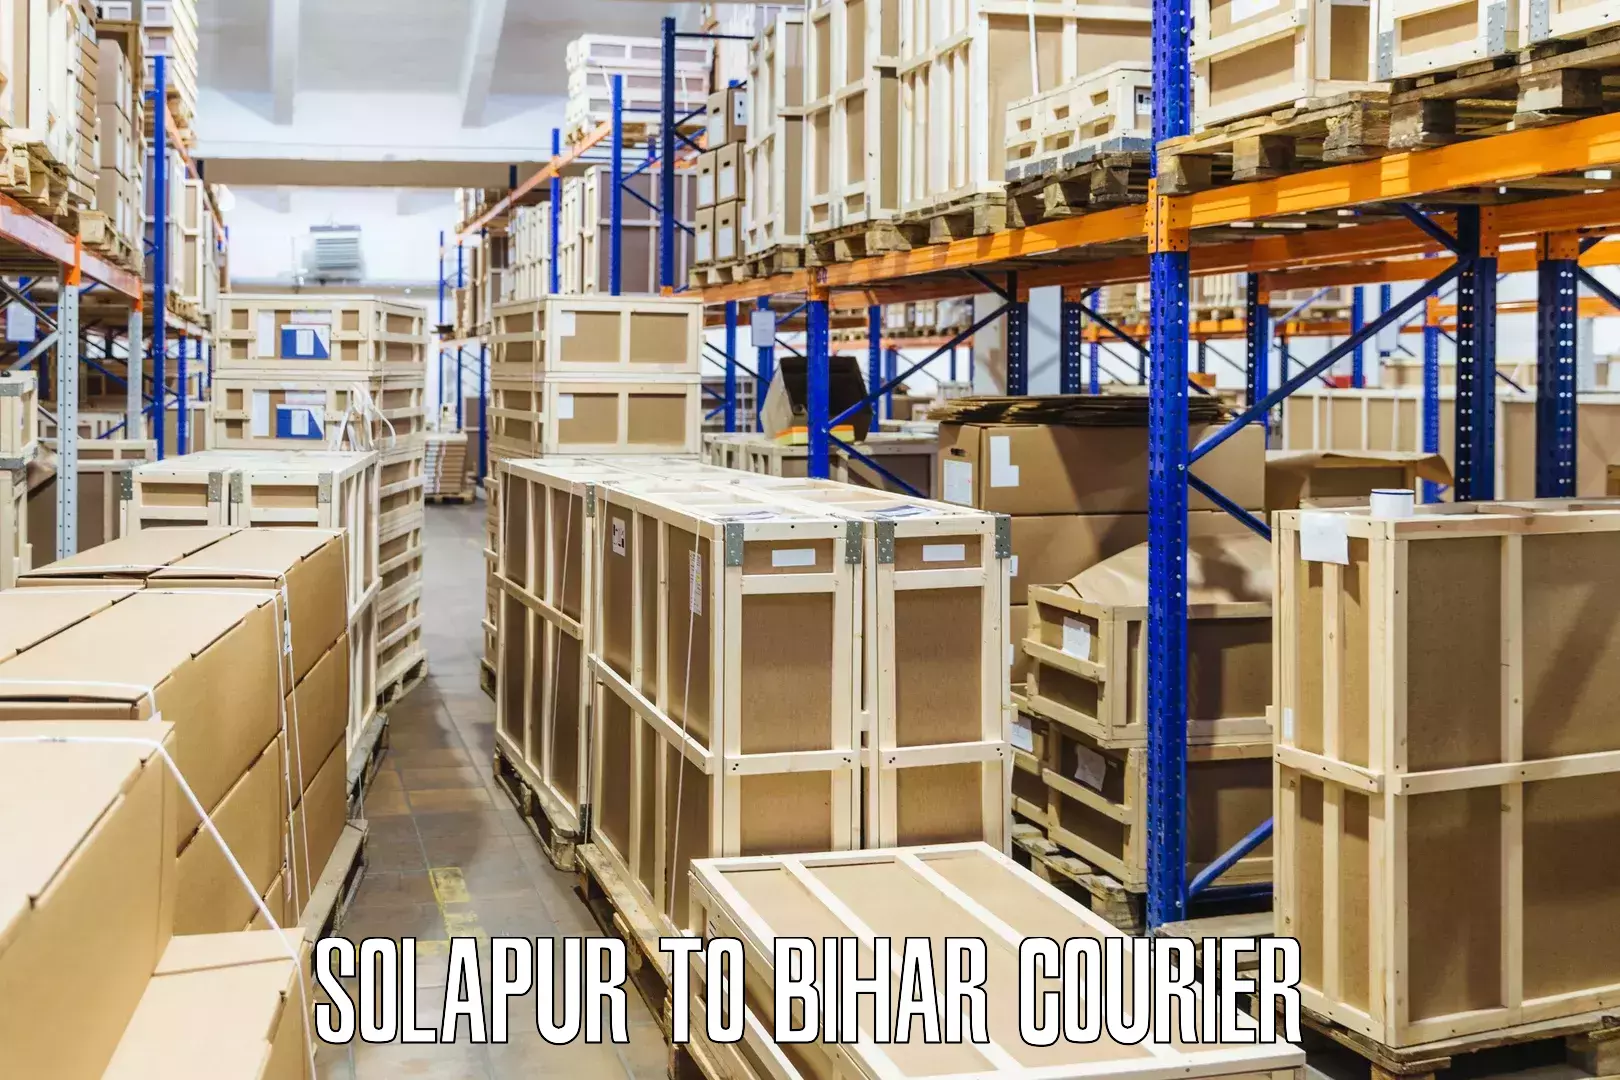 Digital courier platforms Solapur to Bihar